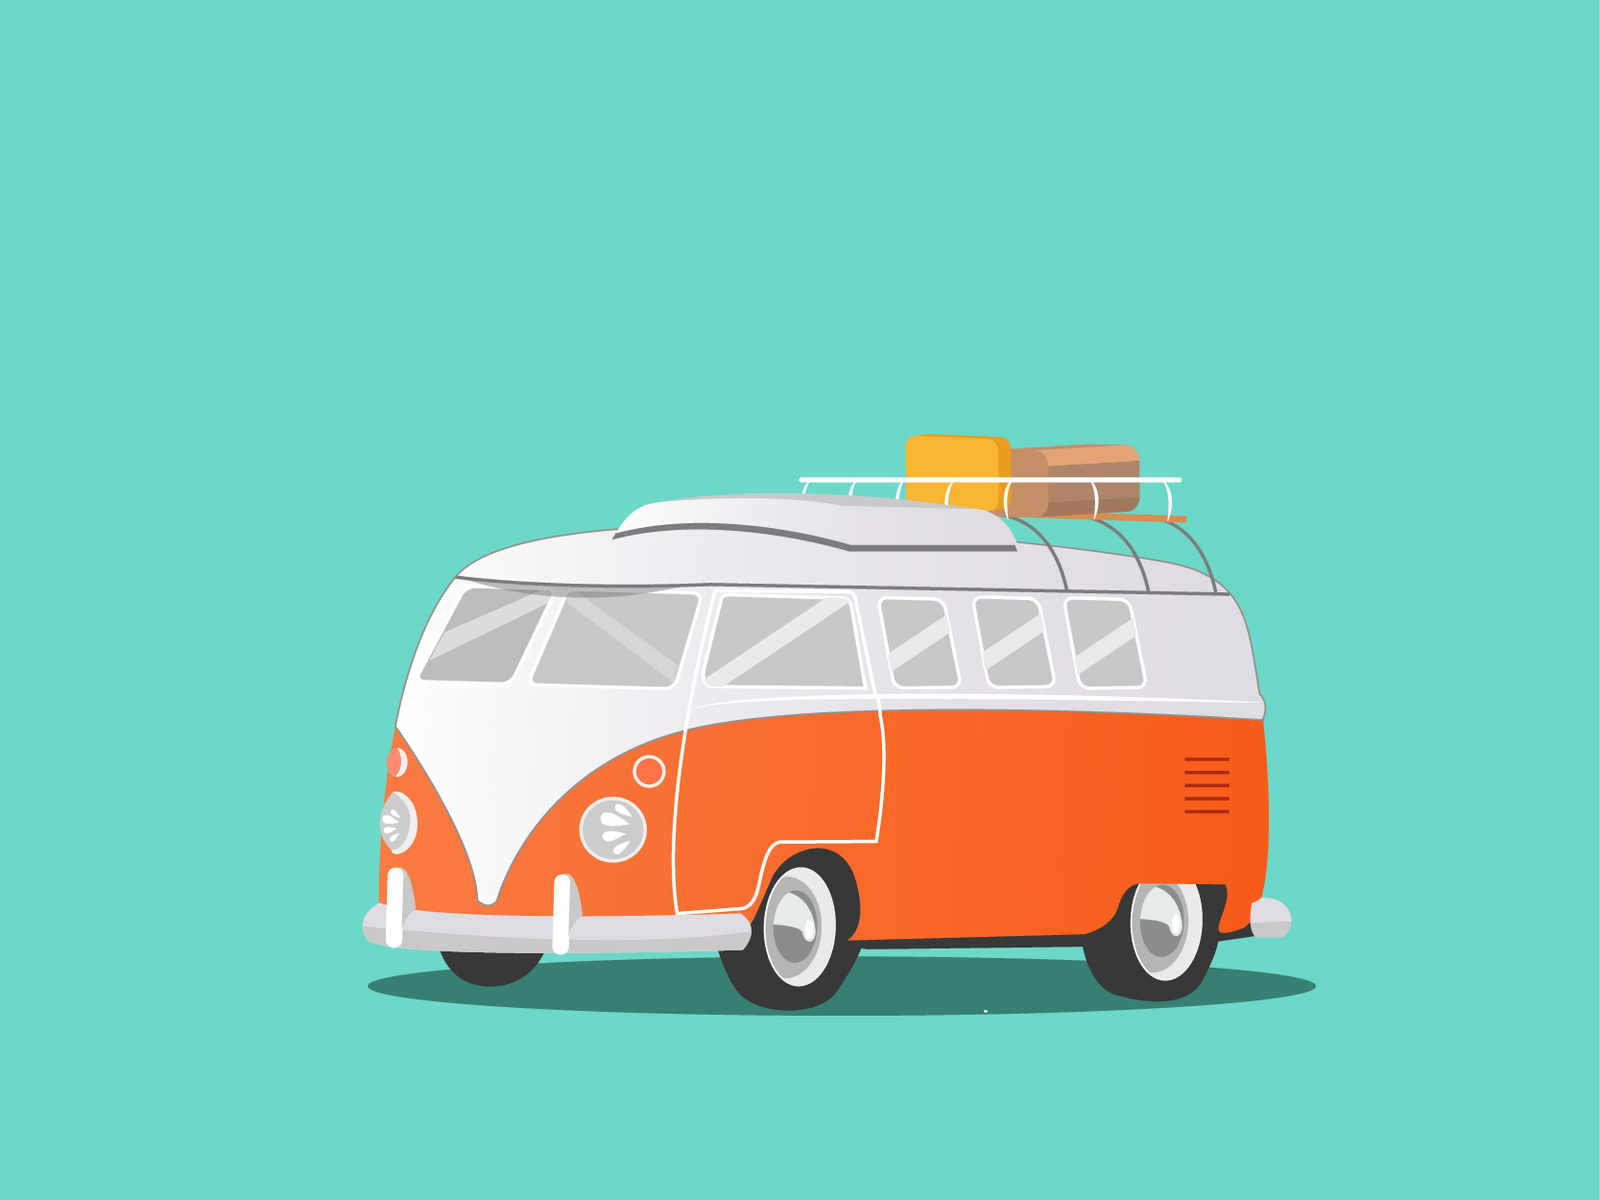 Volkswagen Vintage Camper Van by AKSHAY DINESH on Dribbble